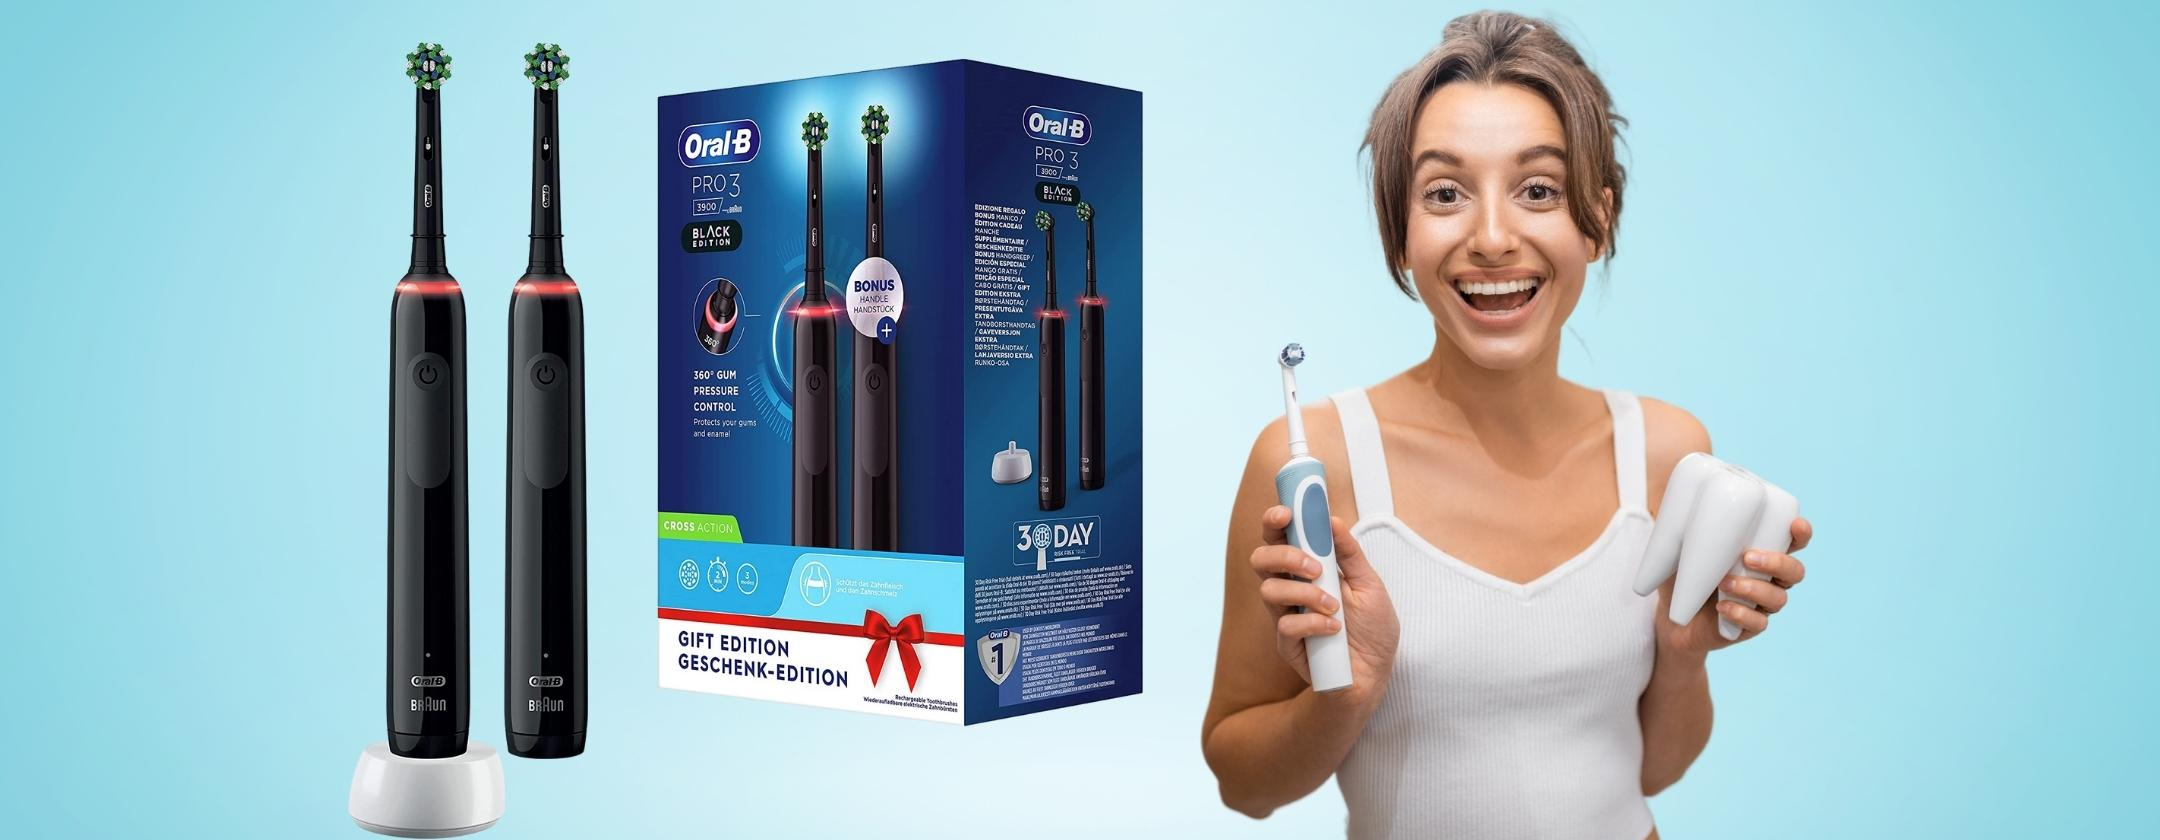 Oral-B Pro 3: due spazzolini elettrici al prezzo di uno (-45%)